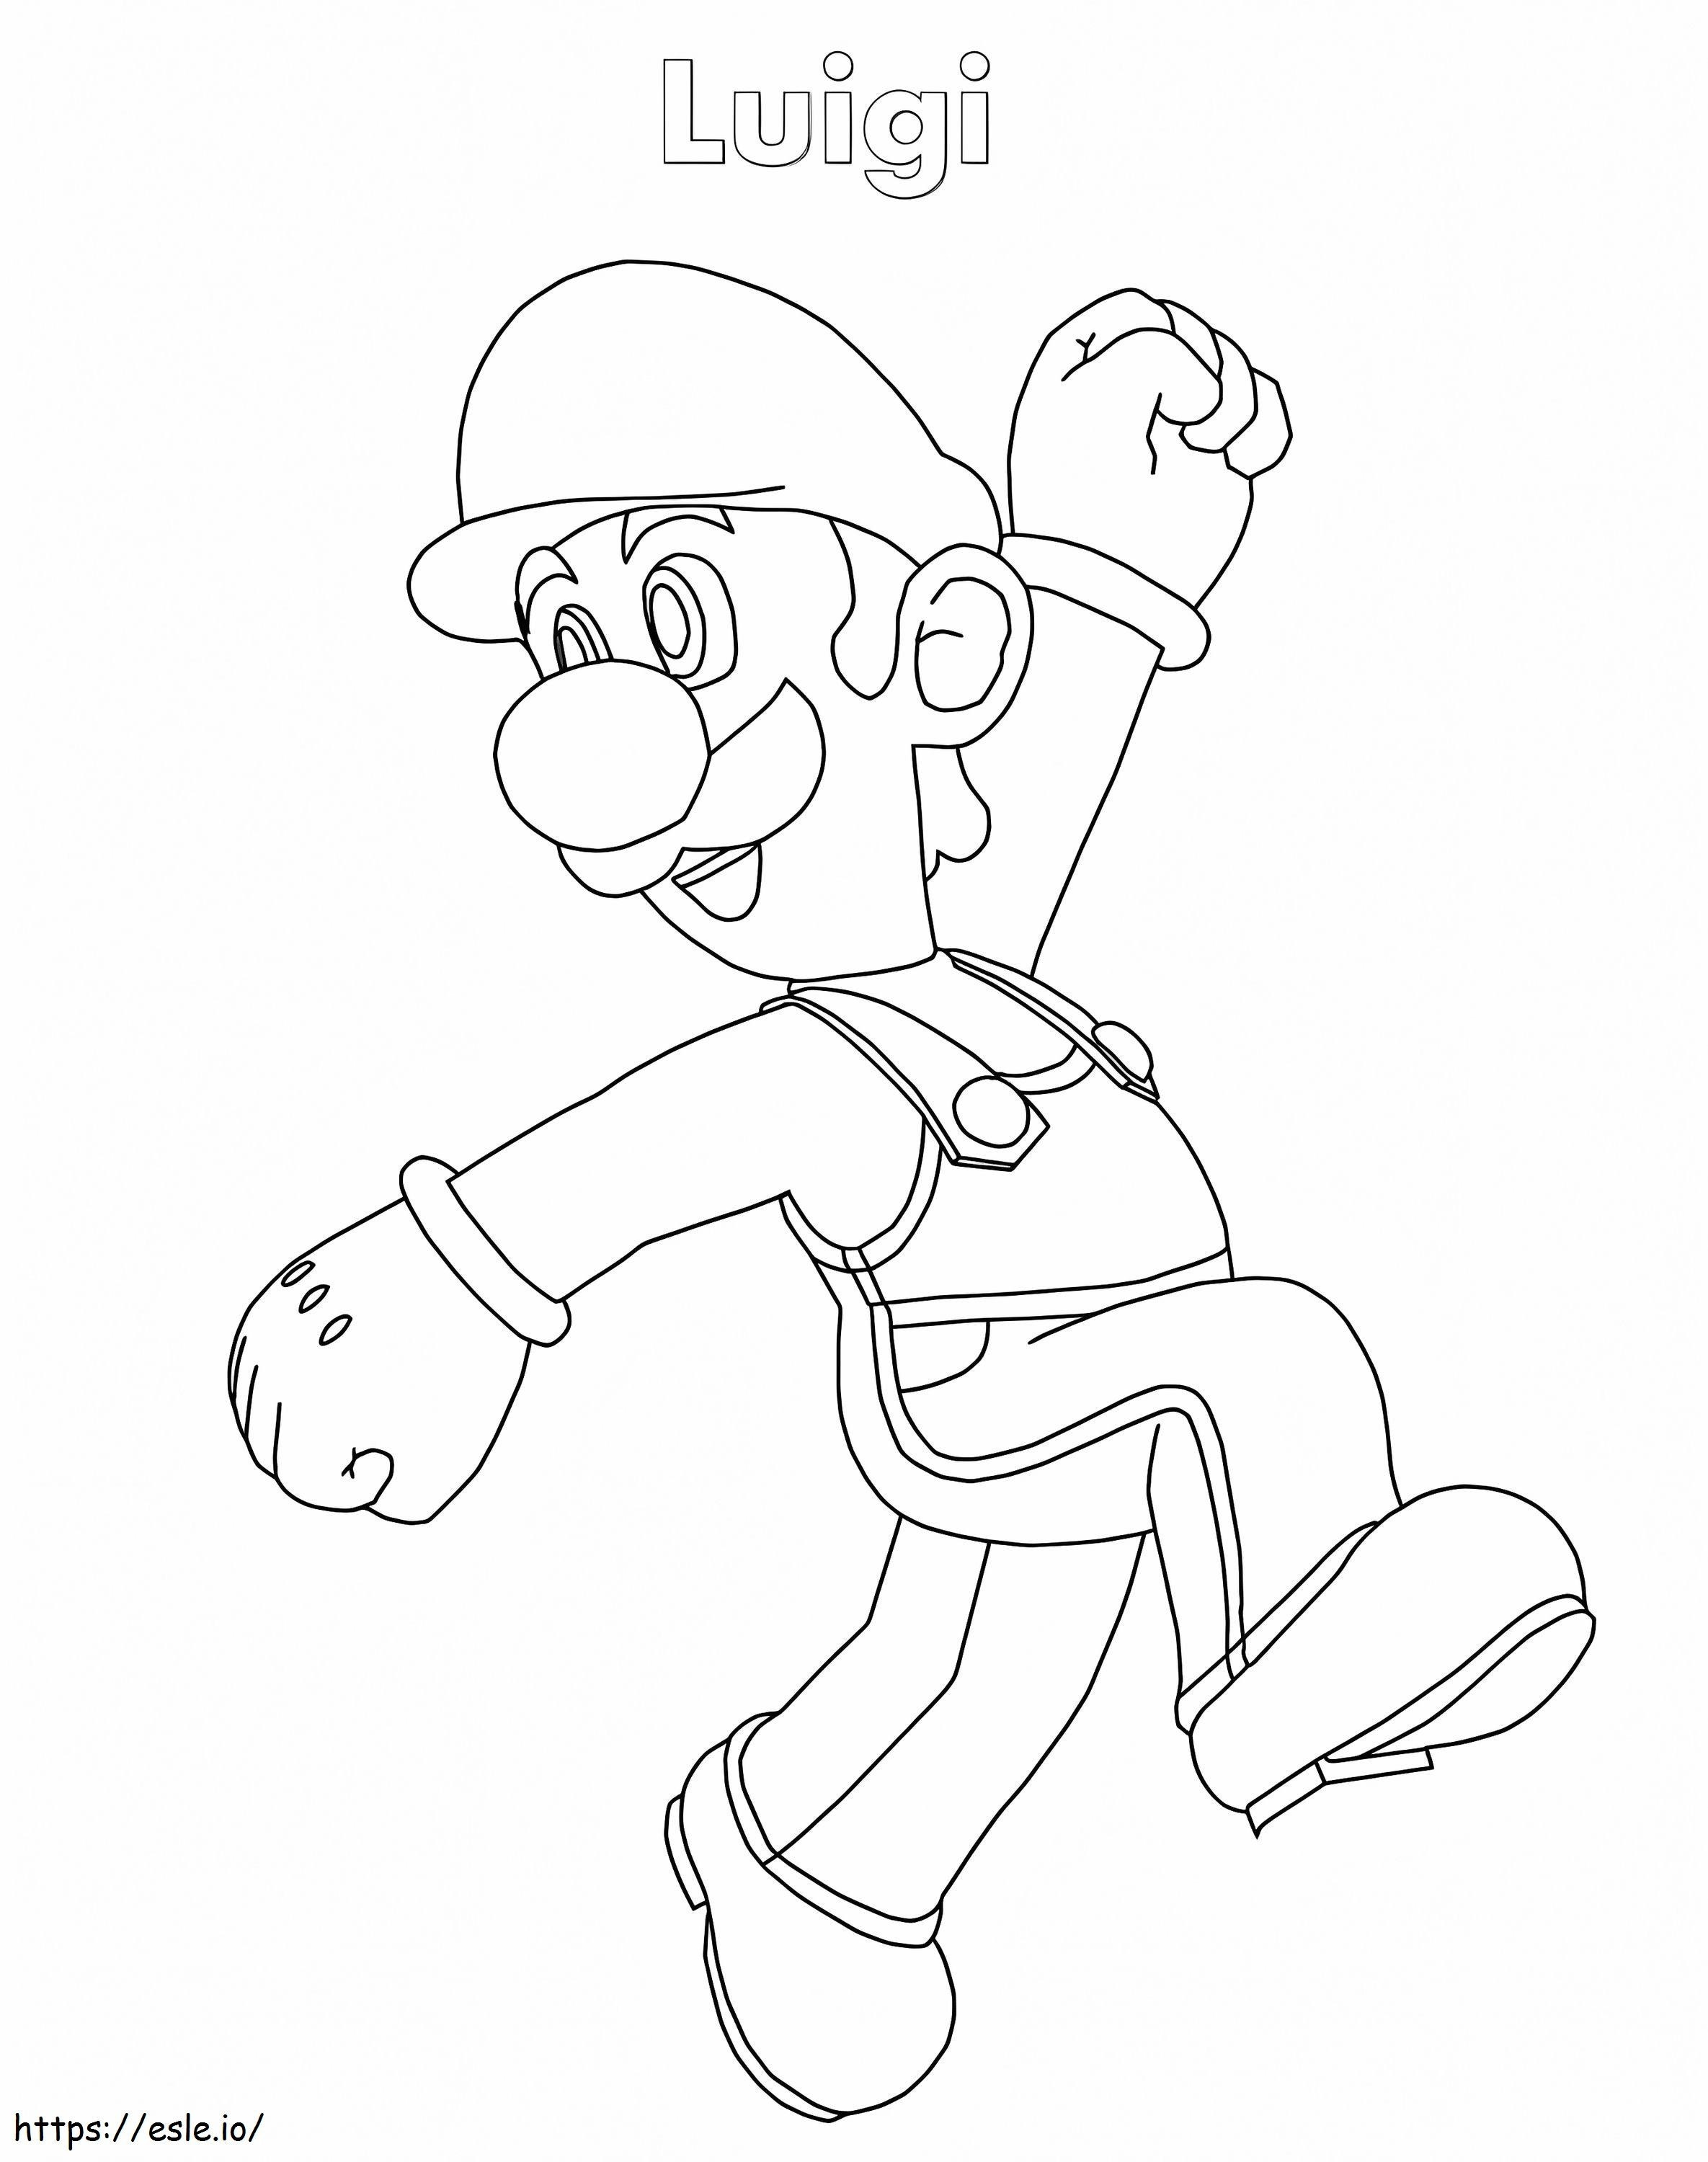 Luigi De Super Mario 7 ausmalbilder